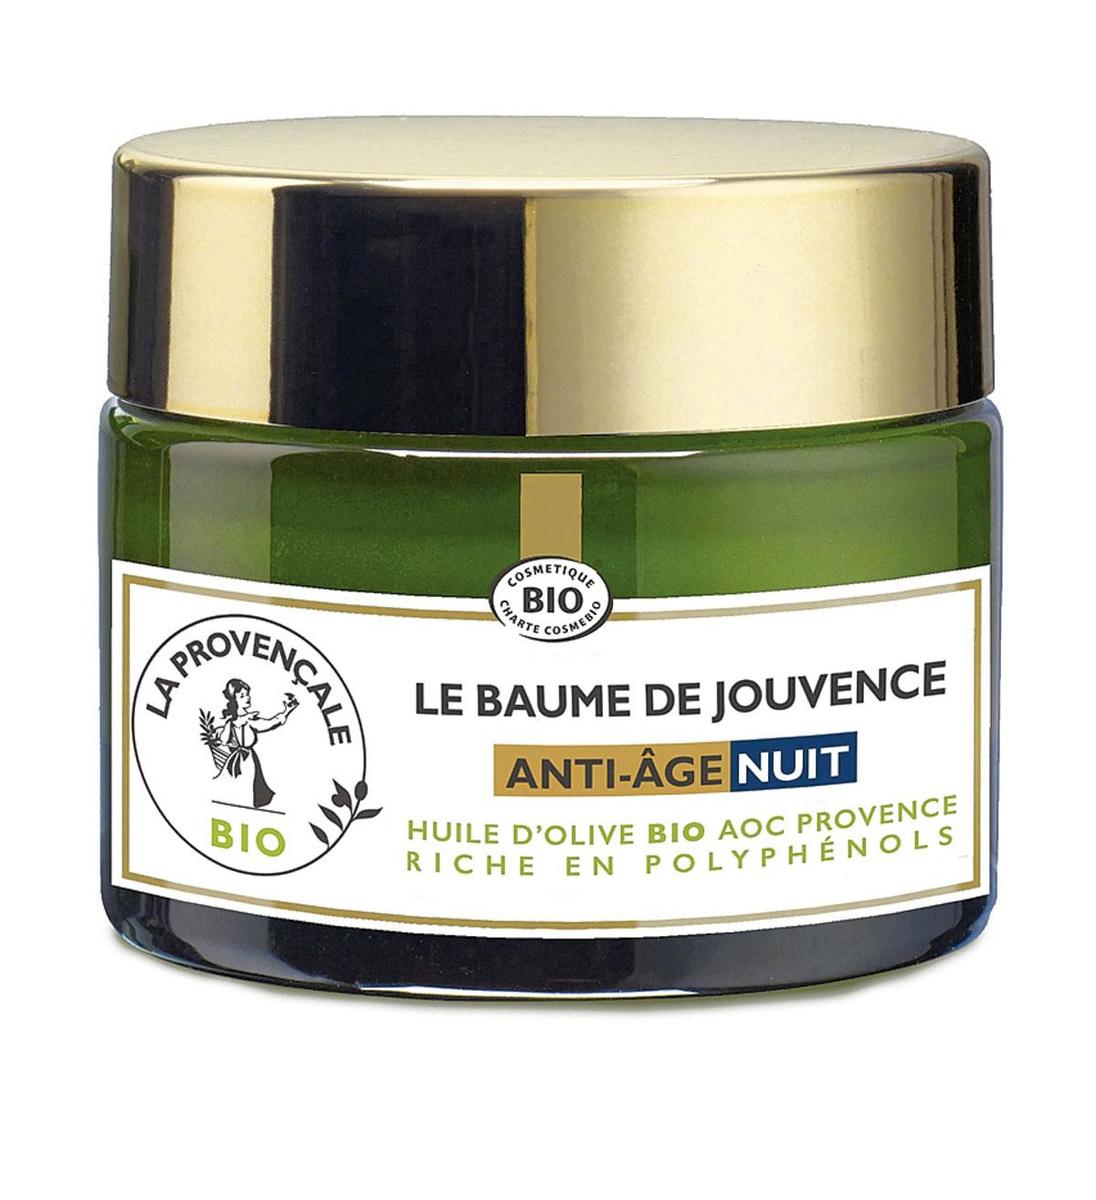 Gorgé d'huile d'olive bio et de polyphénols, ce Baume de Jouvence anti-âge nuit peut s'utiliser en couple. La Provençale (16 ? 50 ml), chez Di et Kruidvat.